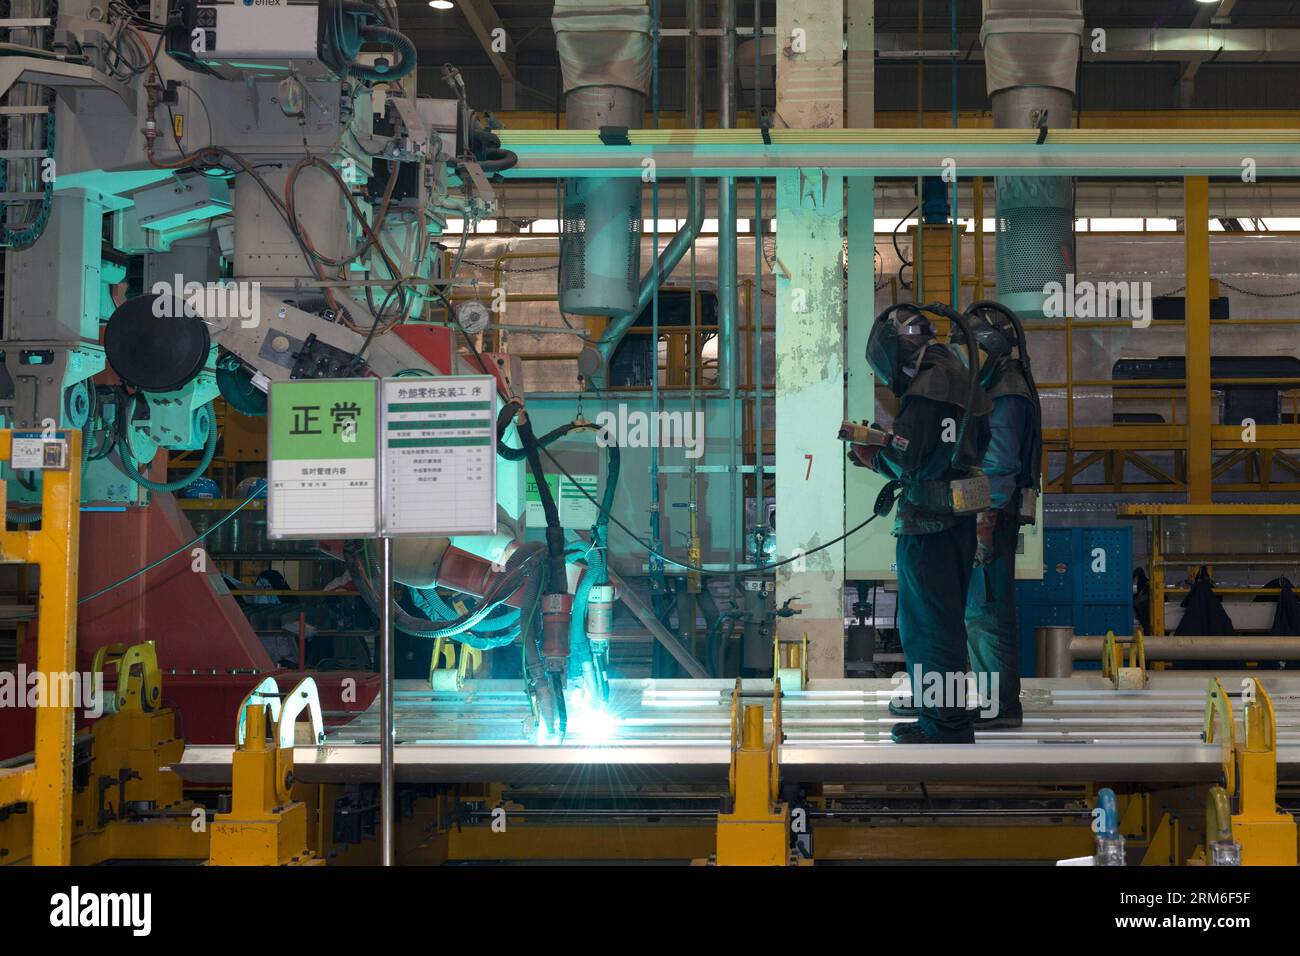 (140109) -- PEKING, 9. Januar 2014 (Xinhua) -- Arbeiter manipulieren Roboter, die die Platte für den Körper eines Hochgeschwindigkeitszuges CRH380A in der Produktionsanlage von Qingdao Sifang Co. Schneiden Ltd., in Qingdao, ostchinesische Provinz Shandong, 3. Januar 2014. Mit der höchsten Geschwindigkeit von 380 km/h ist das Modell der CRH380A der schnellste derzeit in Betrieb befindliche Zug der Welt. Der Zug CRH380A unterscheidet sich von relevanten Fremdprodukten in vier Hauptaspekten: Außenform der Lokomotive, Drehgestell, Karosseriedichtung sowie Netzsteuerungs- und Schleppsysteme. Es wurde nach internationalen Standards und in einigen Fällen entworfen Stockfoto